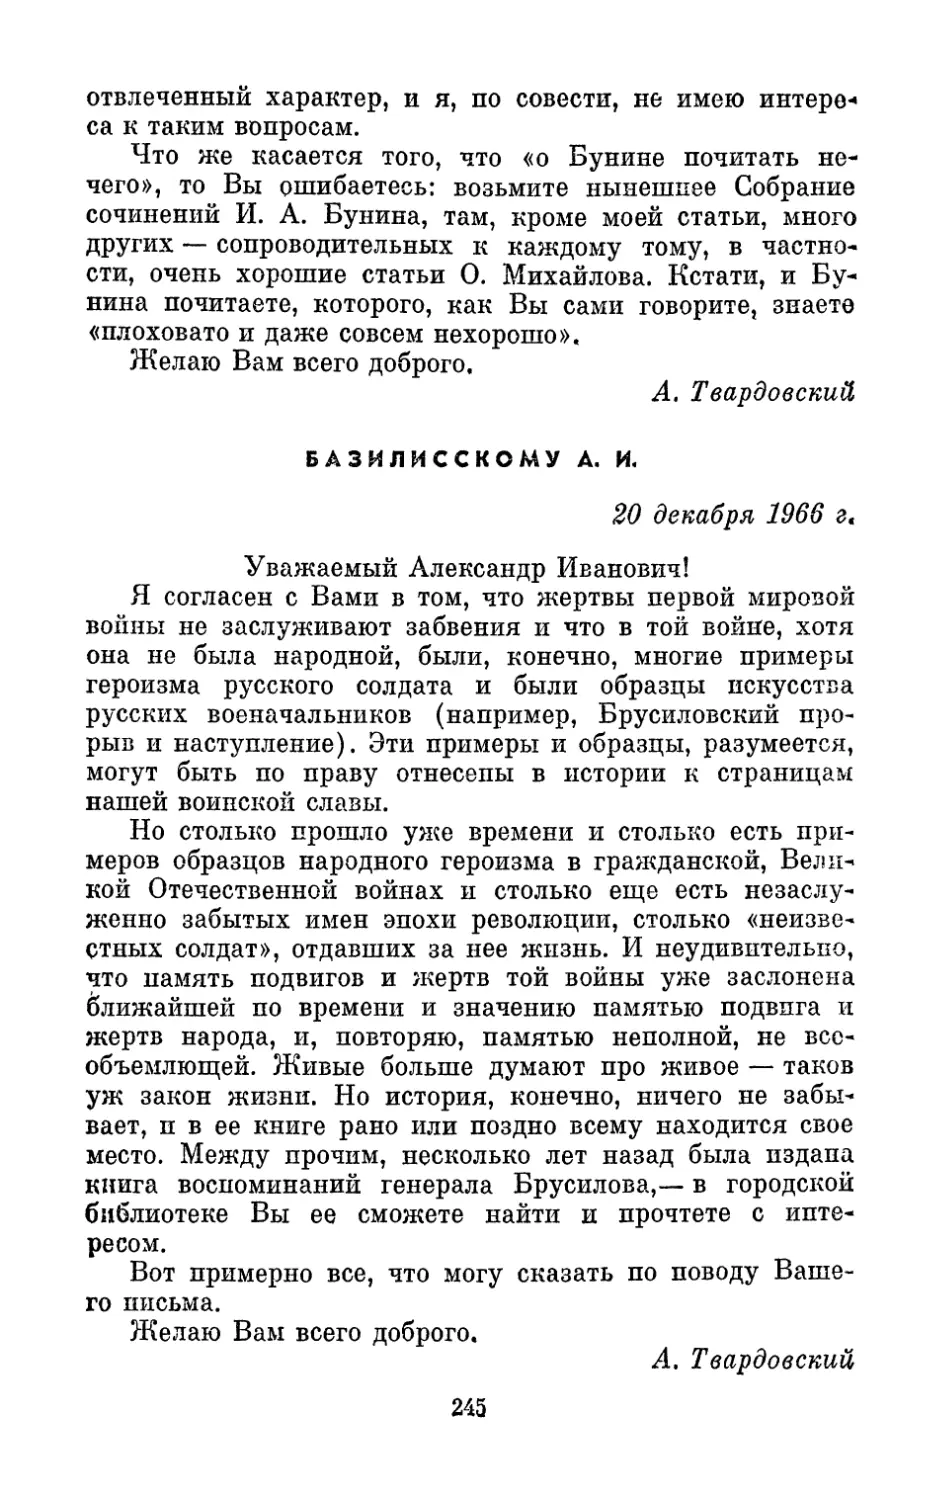 Базилисскому А. И., 20 декабря 1966 г.